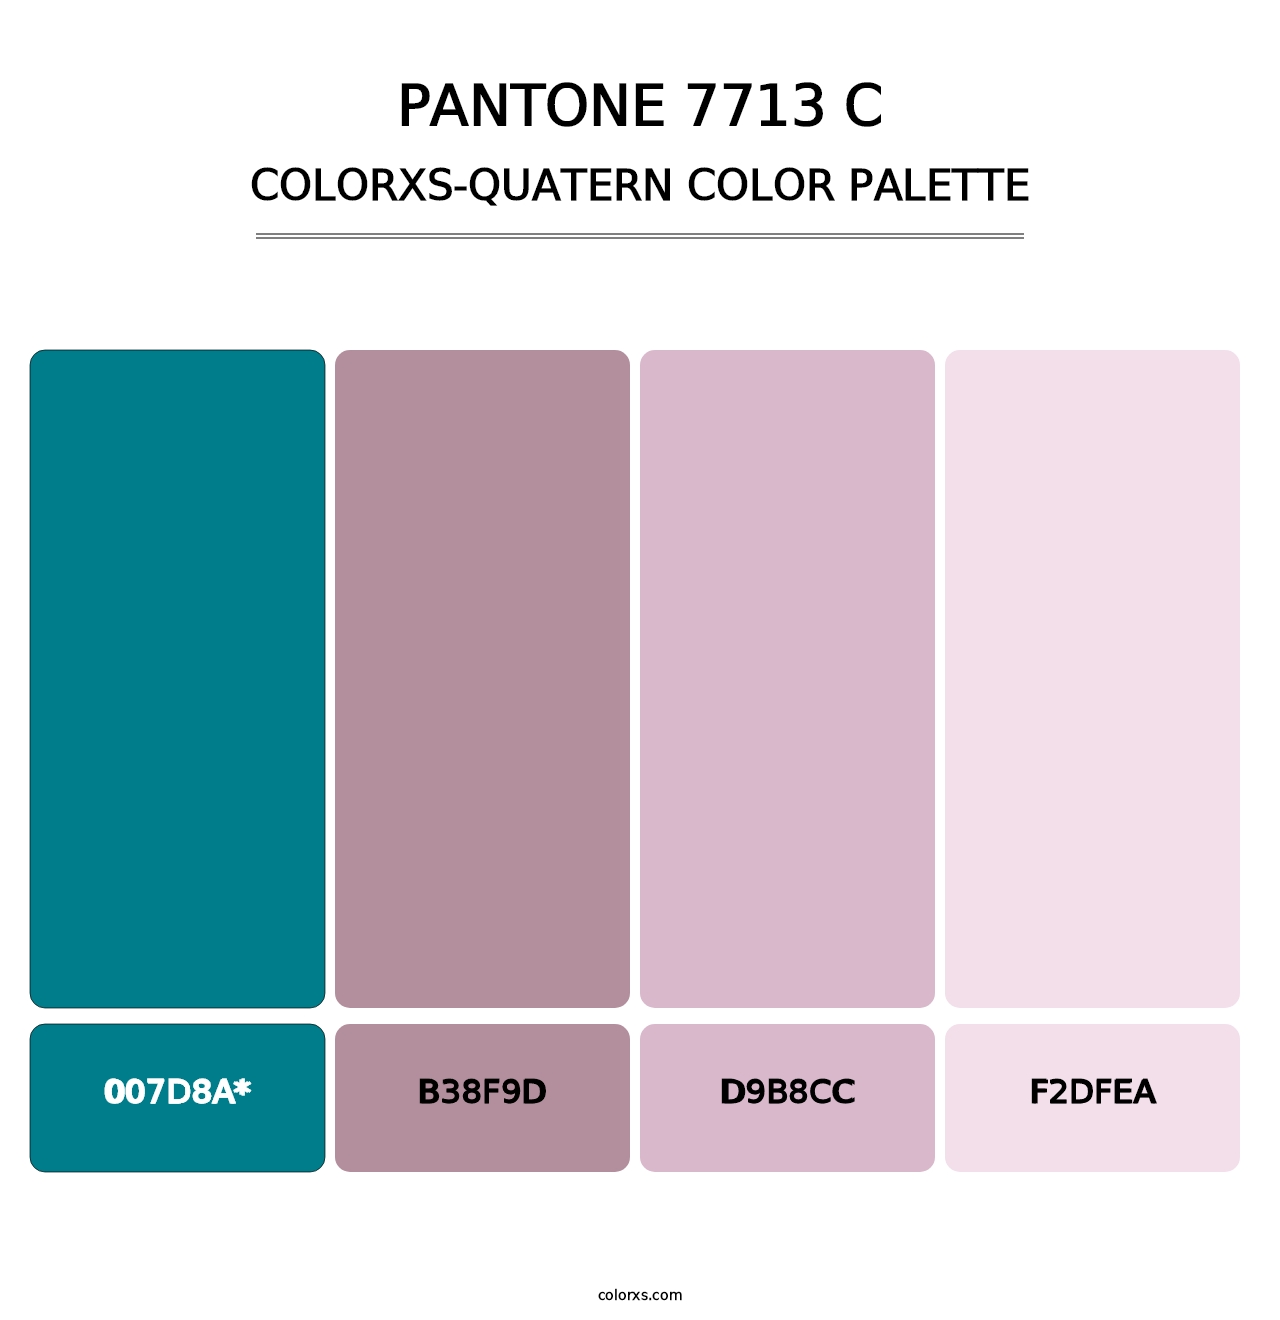 PANTONE 7713 C - Colorxs Quad Palette